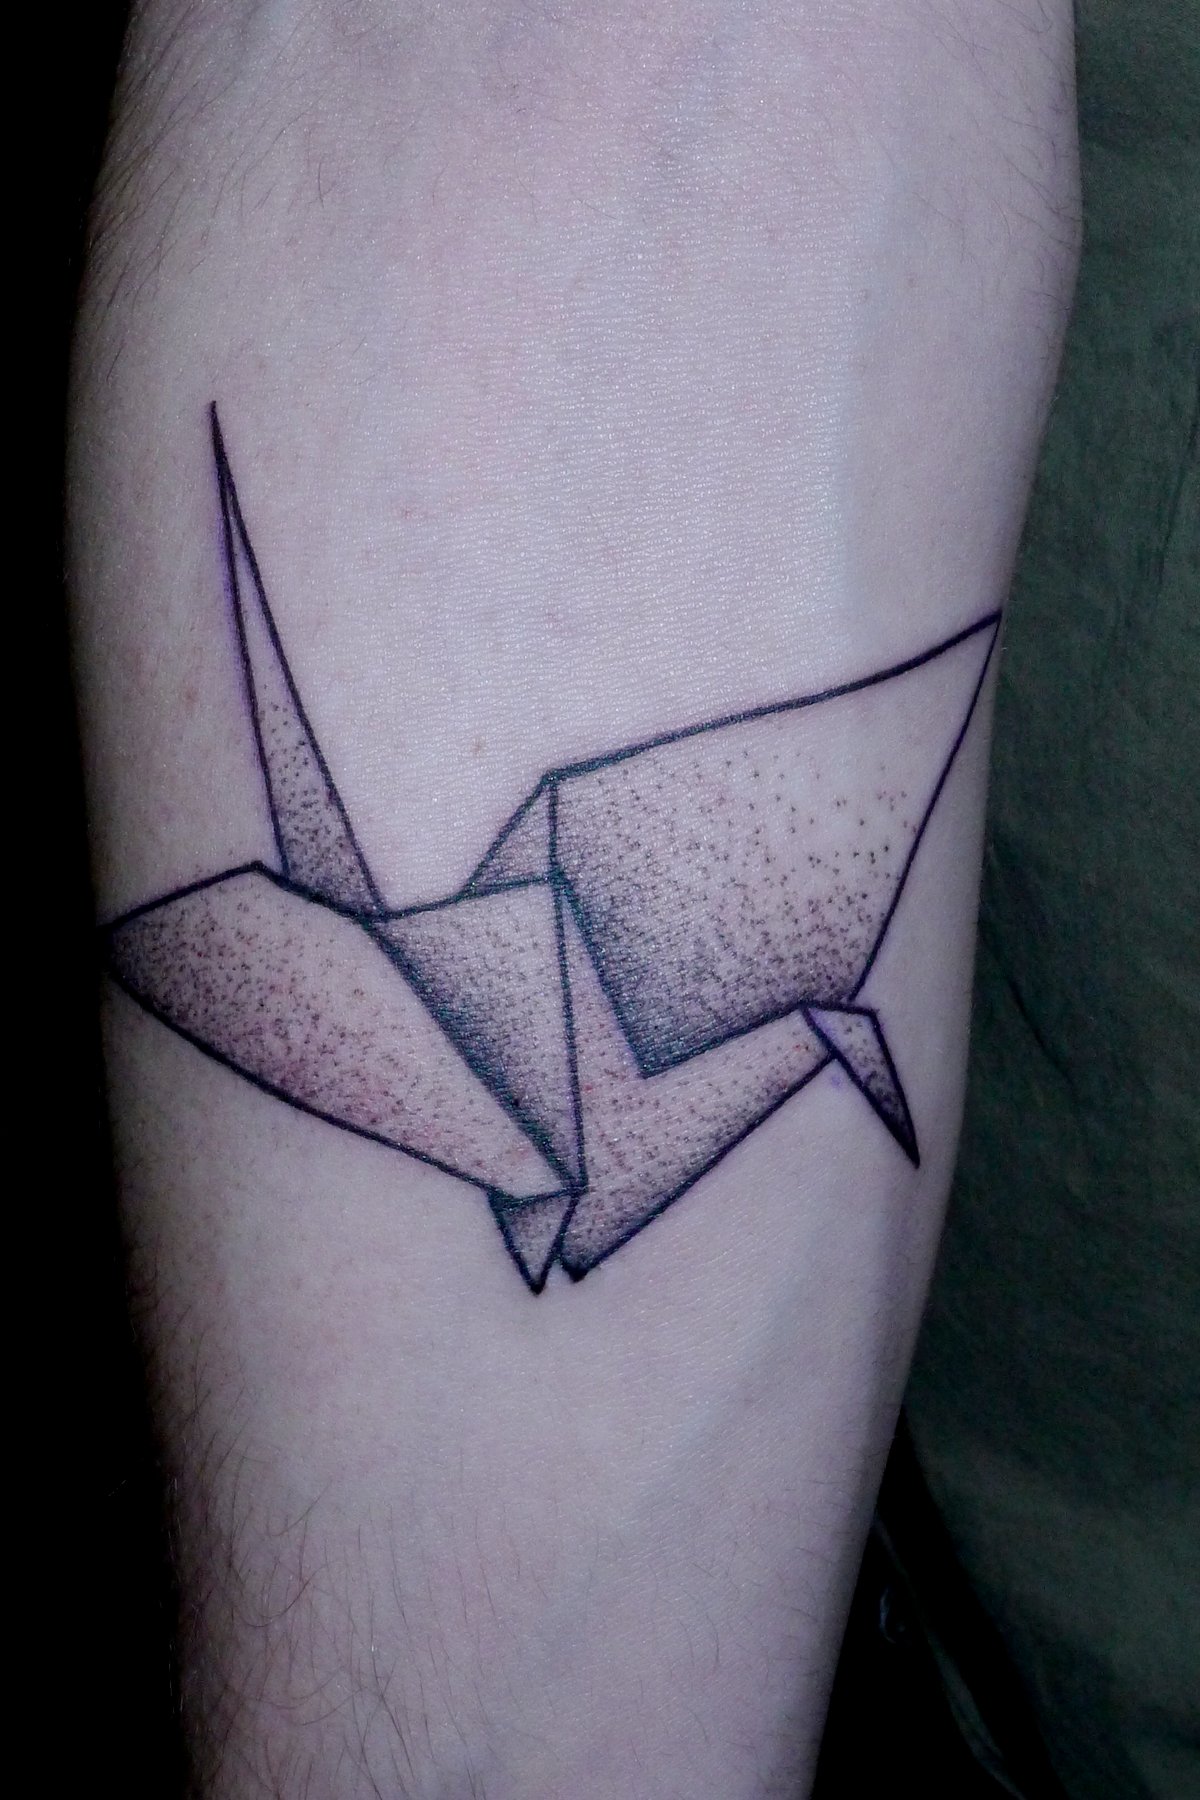 Origami Swan Tattoo